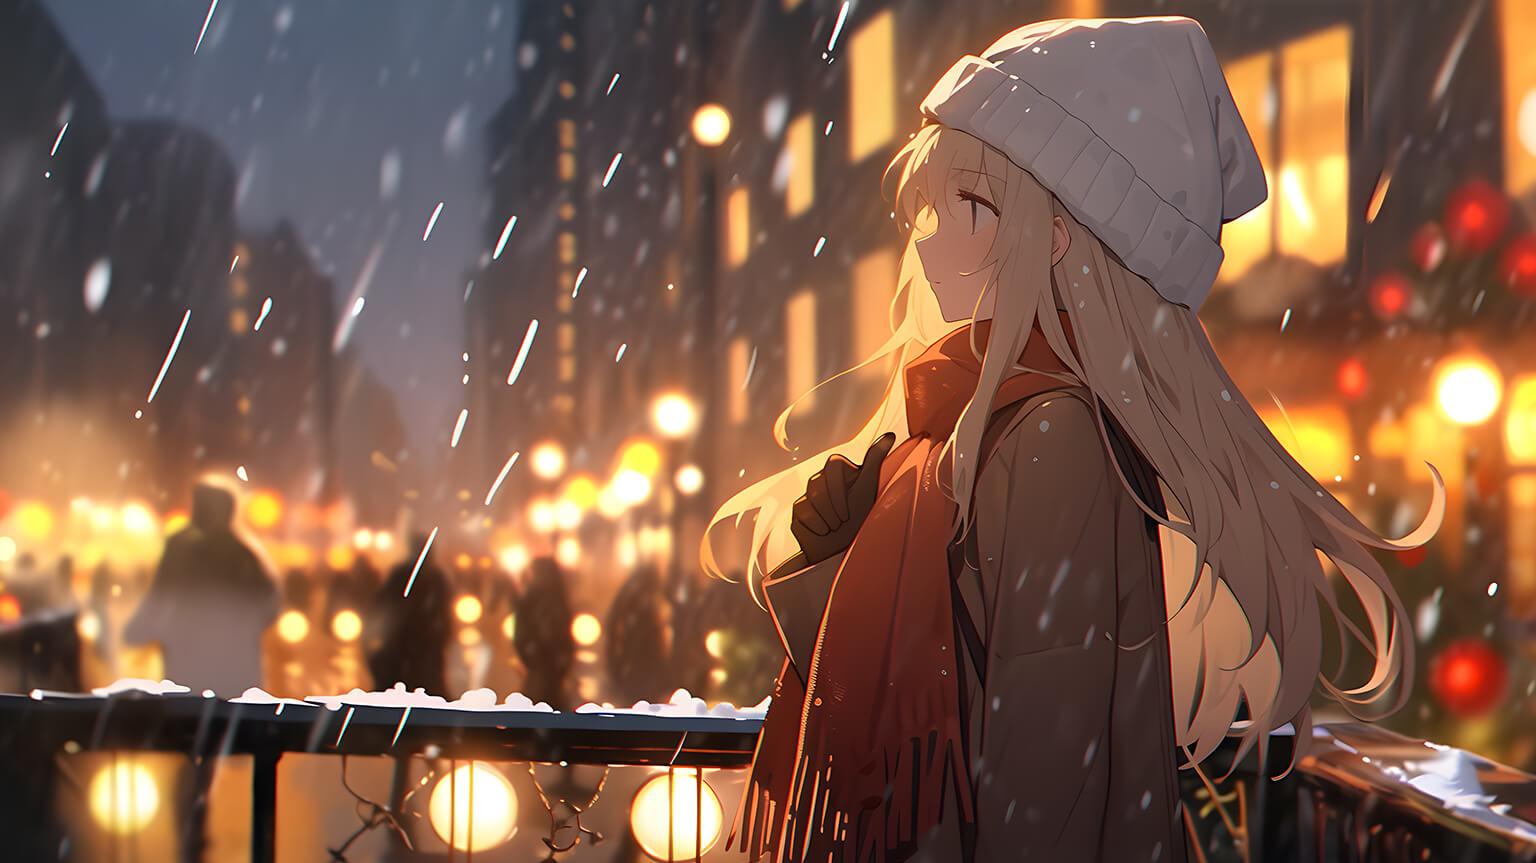 Christmas Anime Girl In City Desktop Wallpaper